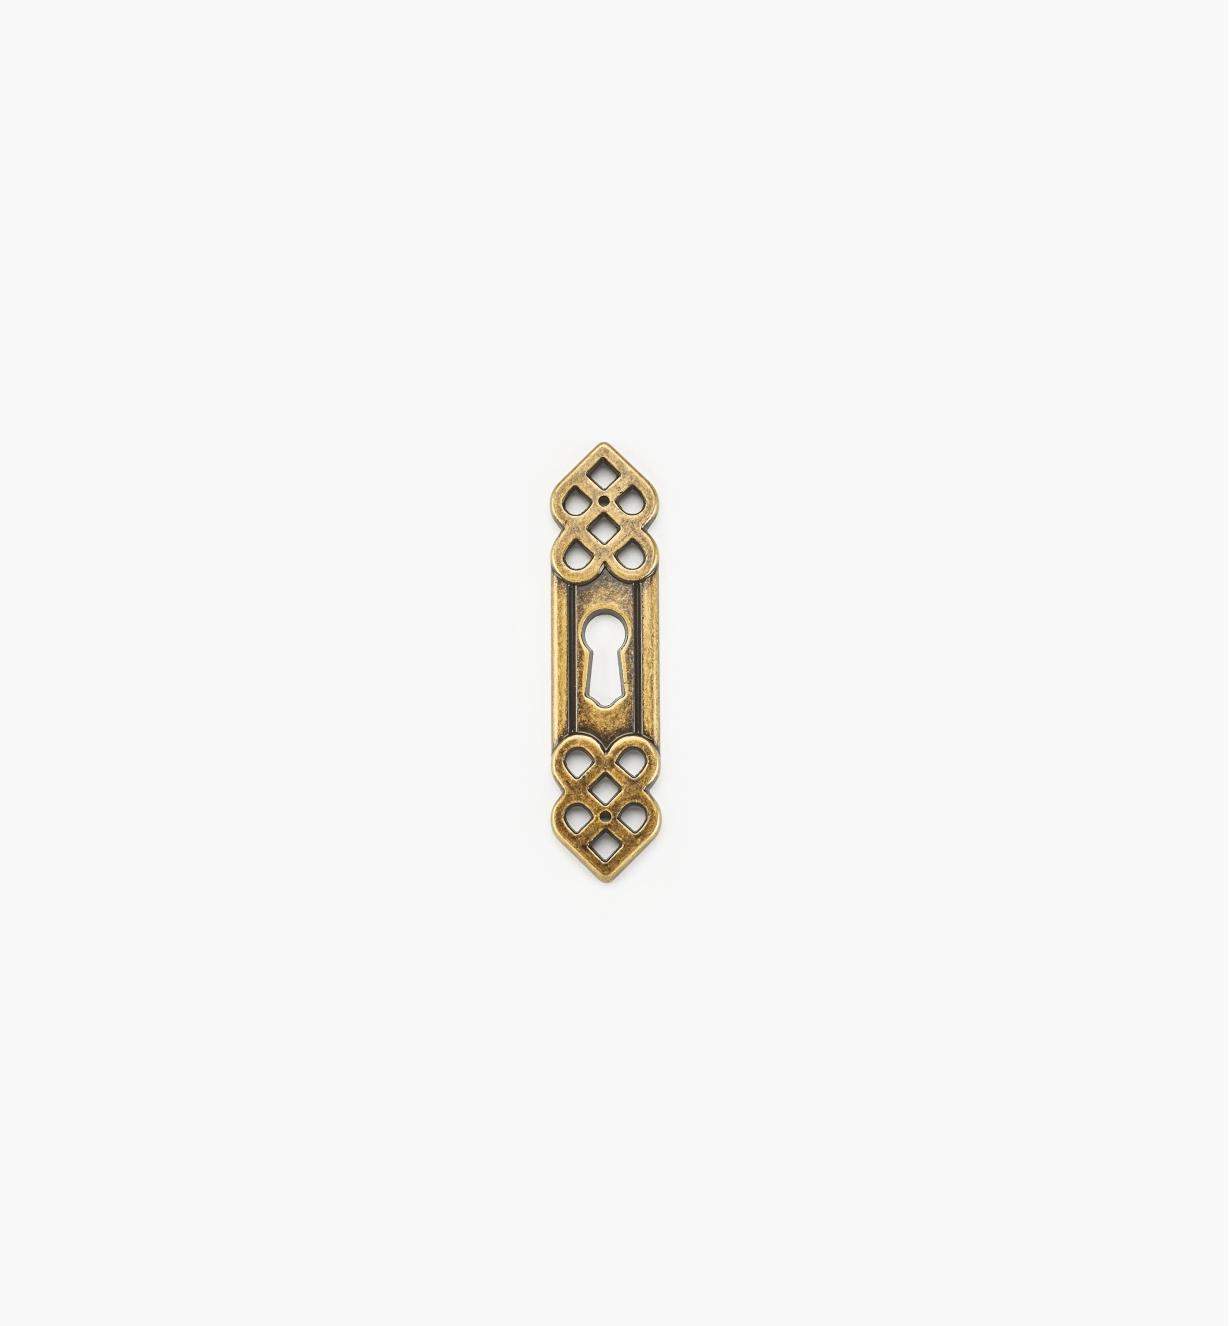 01A3020 - Entrée de serrure verticale ornée d'entrelacs et de perles de 3 1/2 po x 7/8 po, fini laiton antique